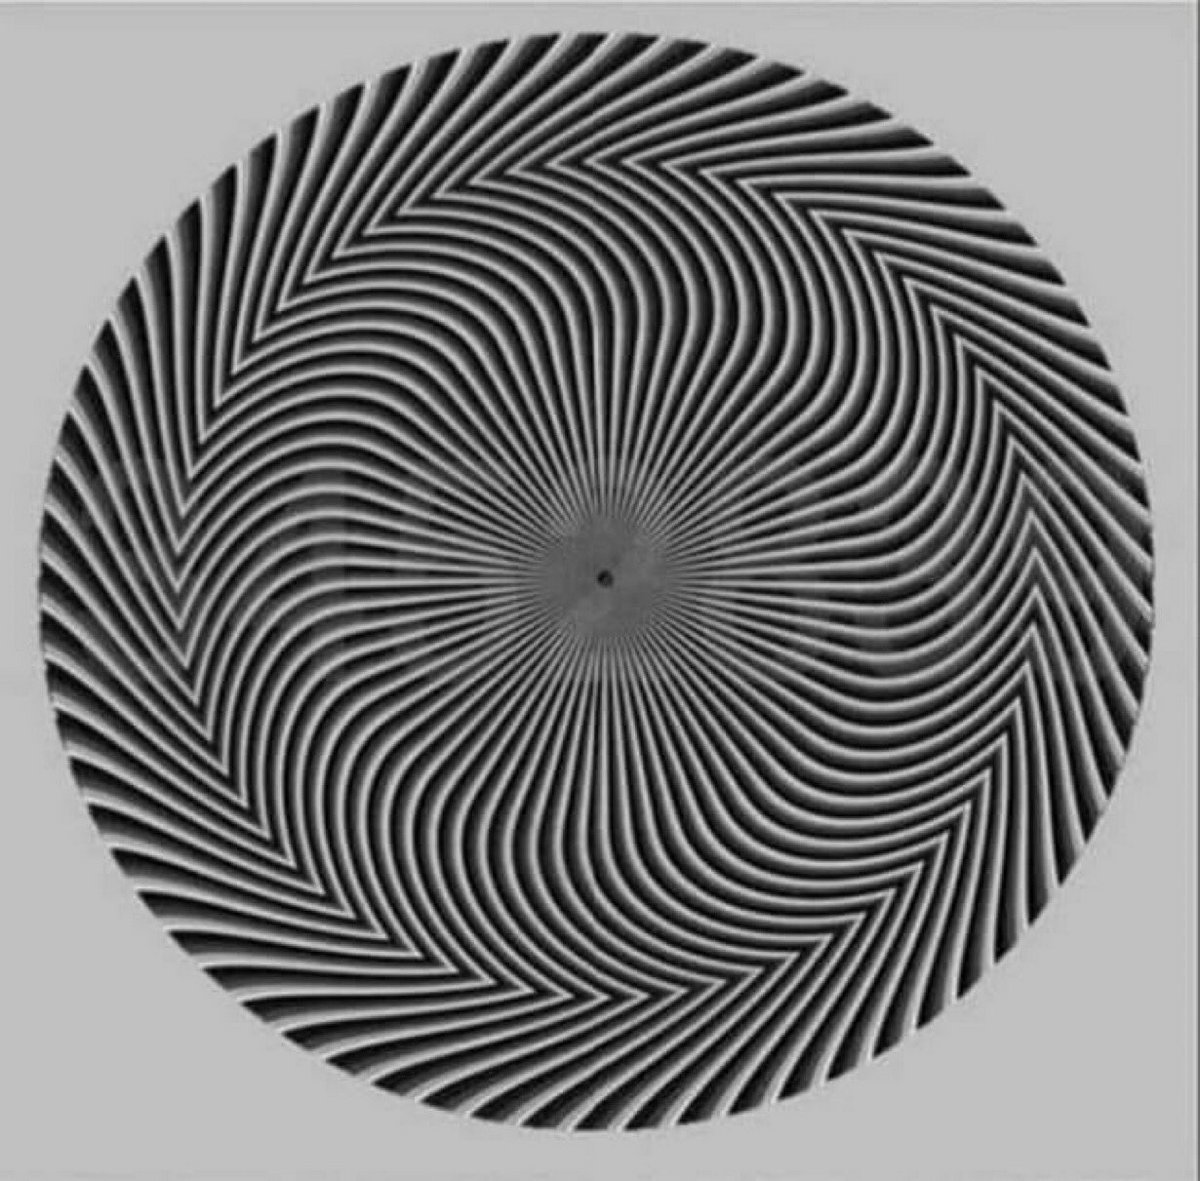 Cette illusion d’optique montre un nombre caché que tout le monde voit différemment